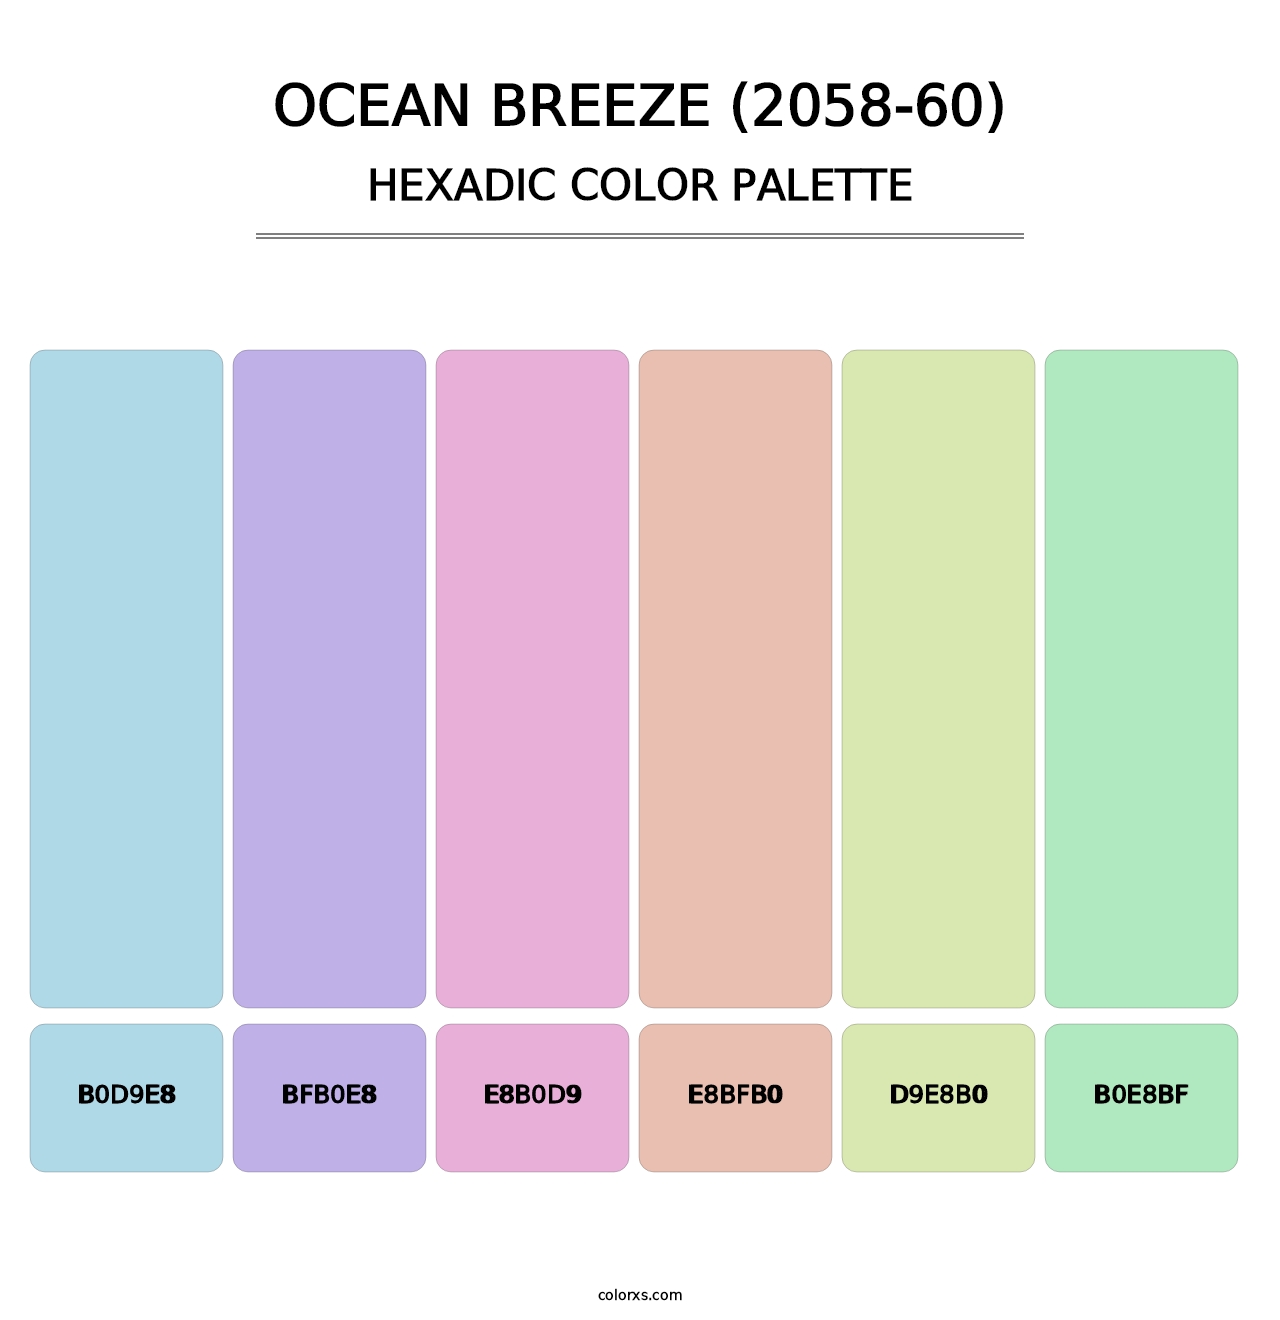 Ocean Breeze (2058-60) - Hexadic Color Palette